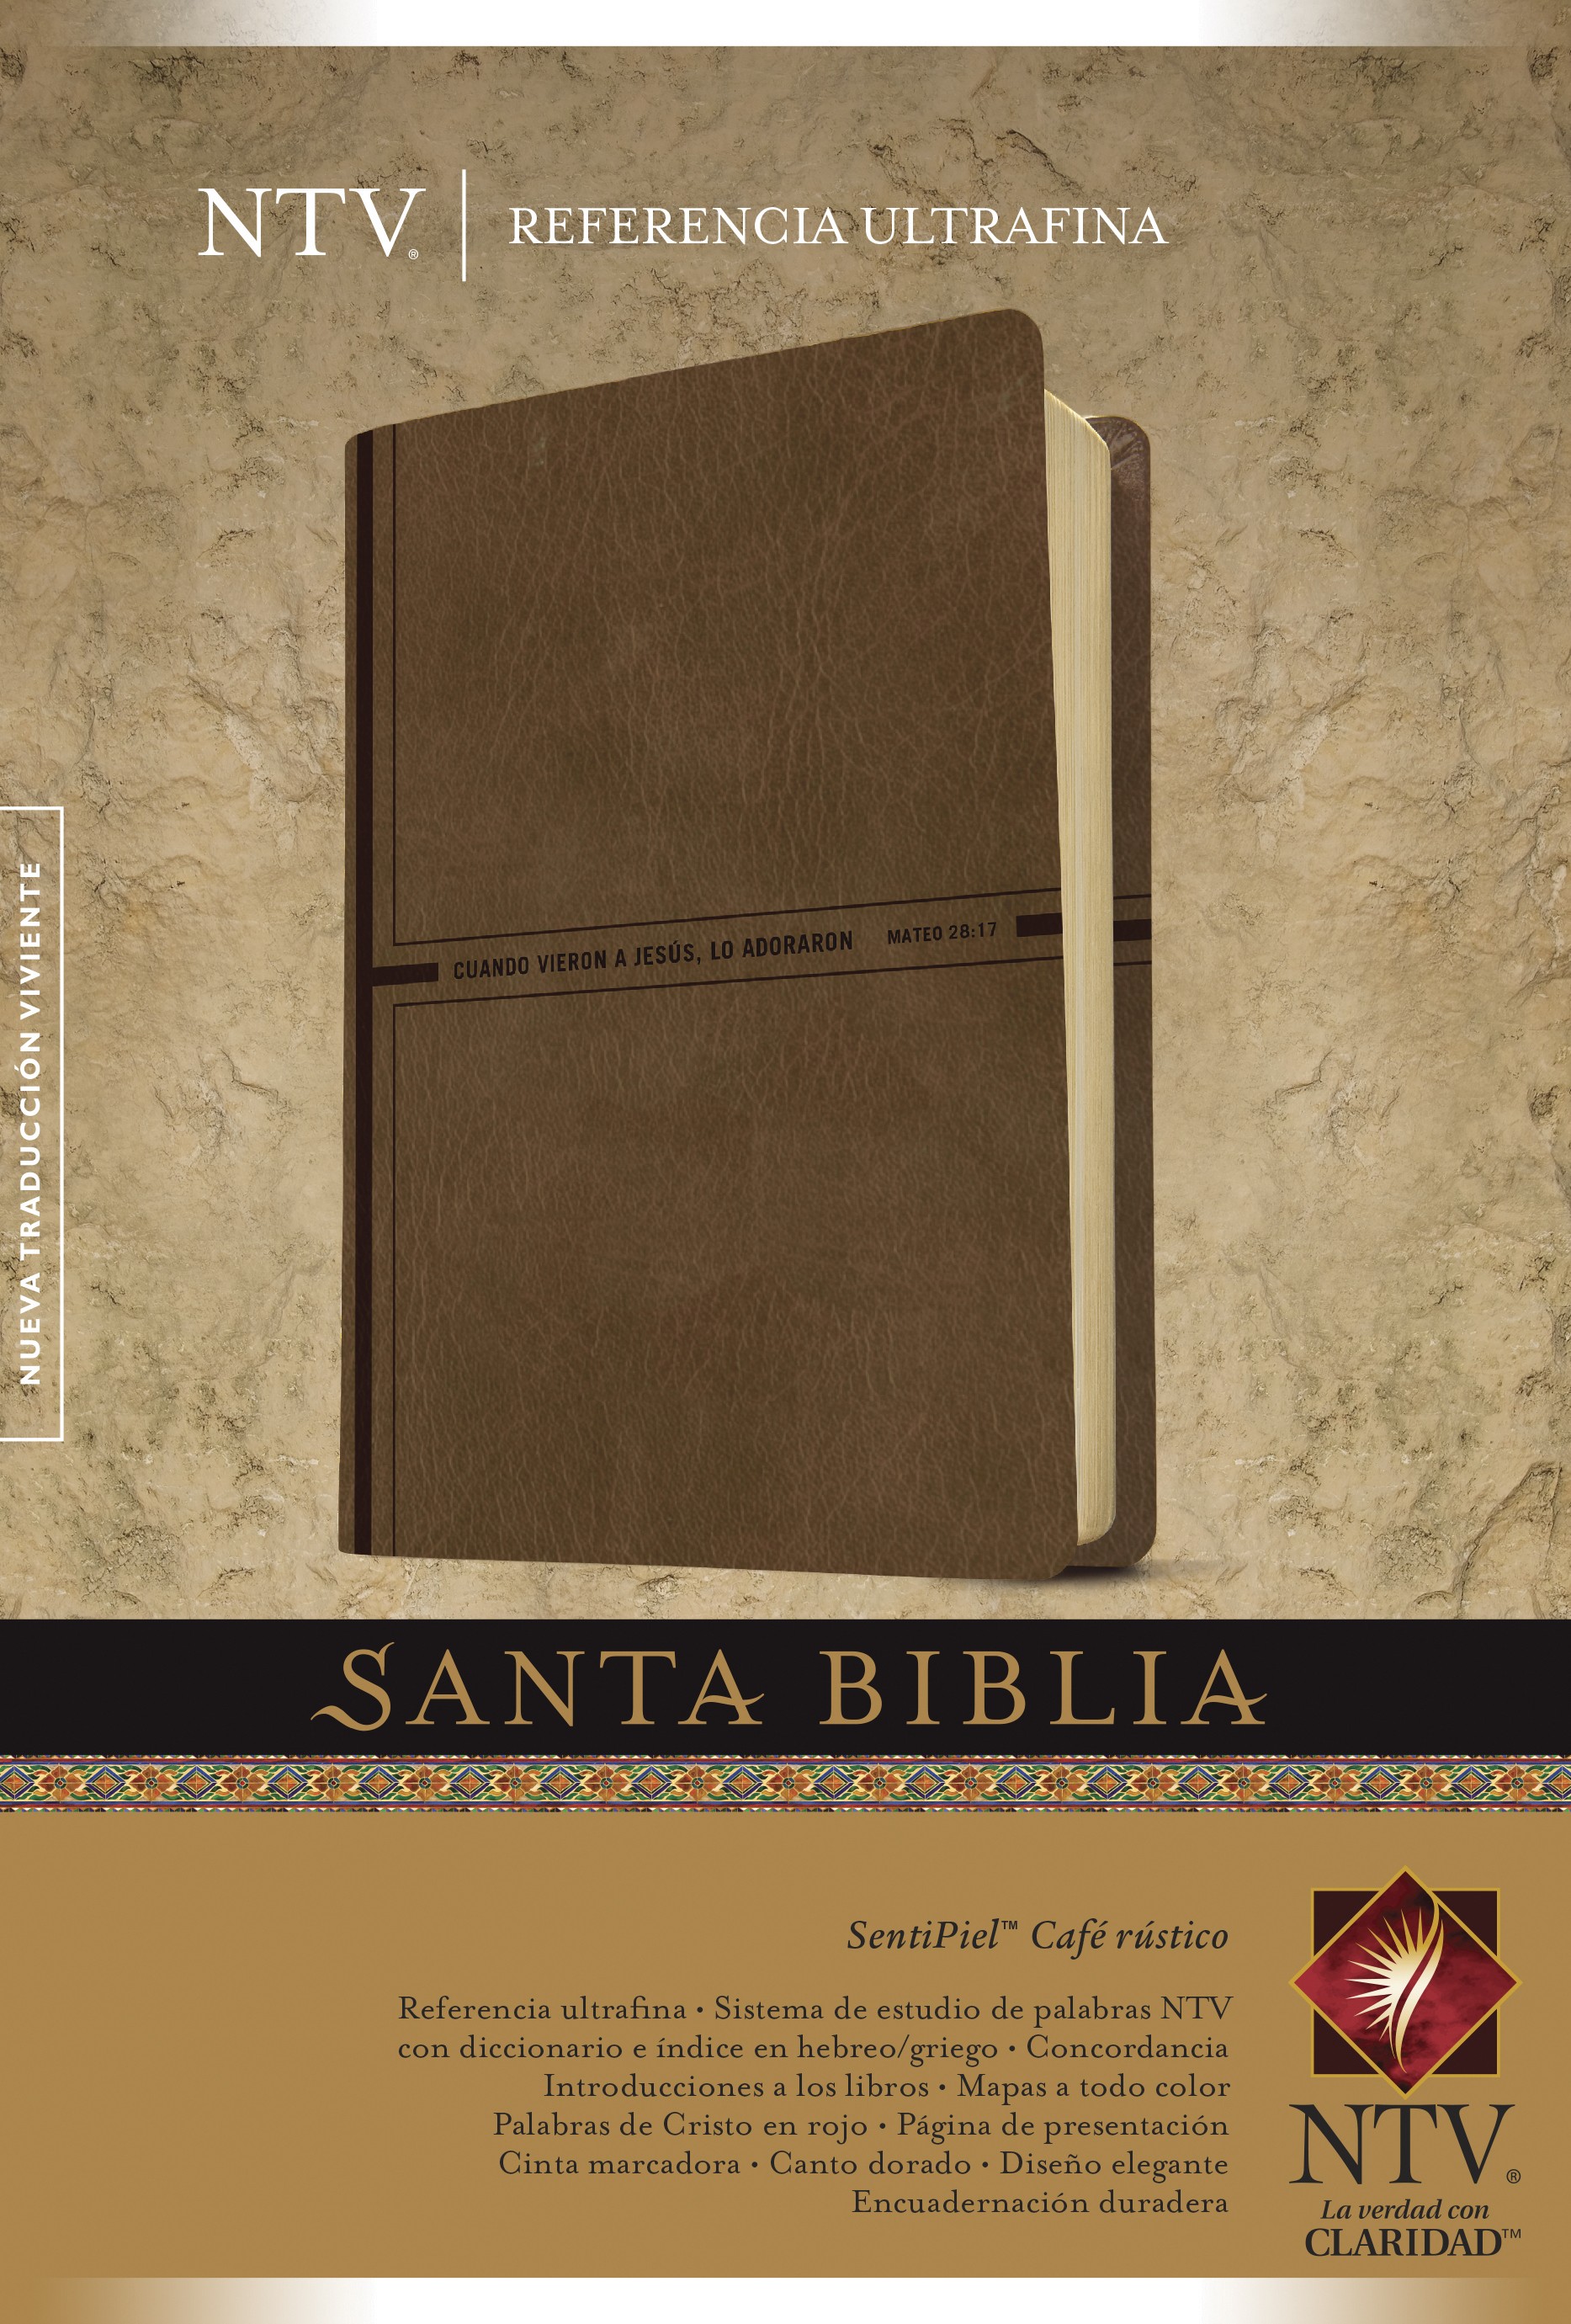  Santa Biblia NTV, Edición de referencia ultrafina